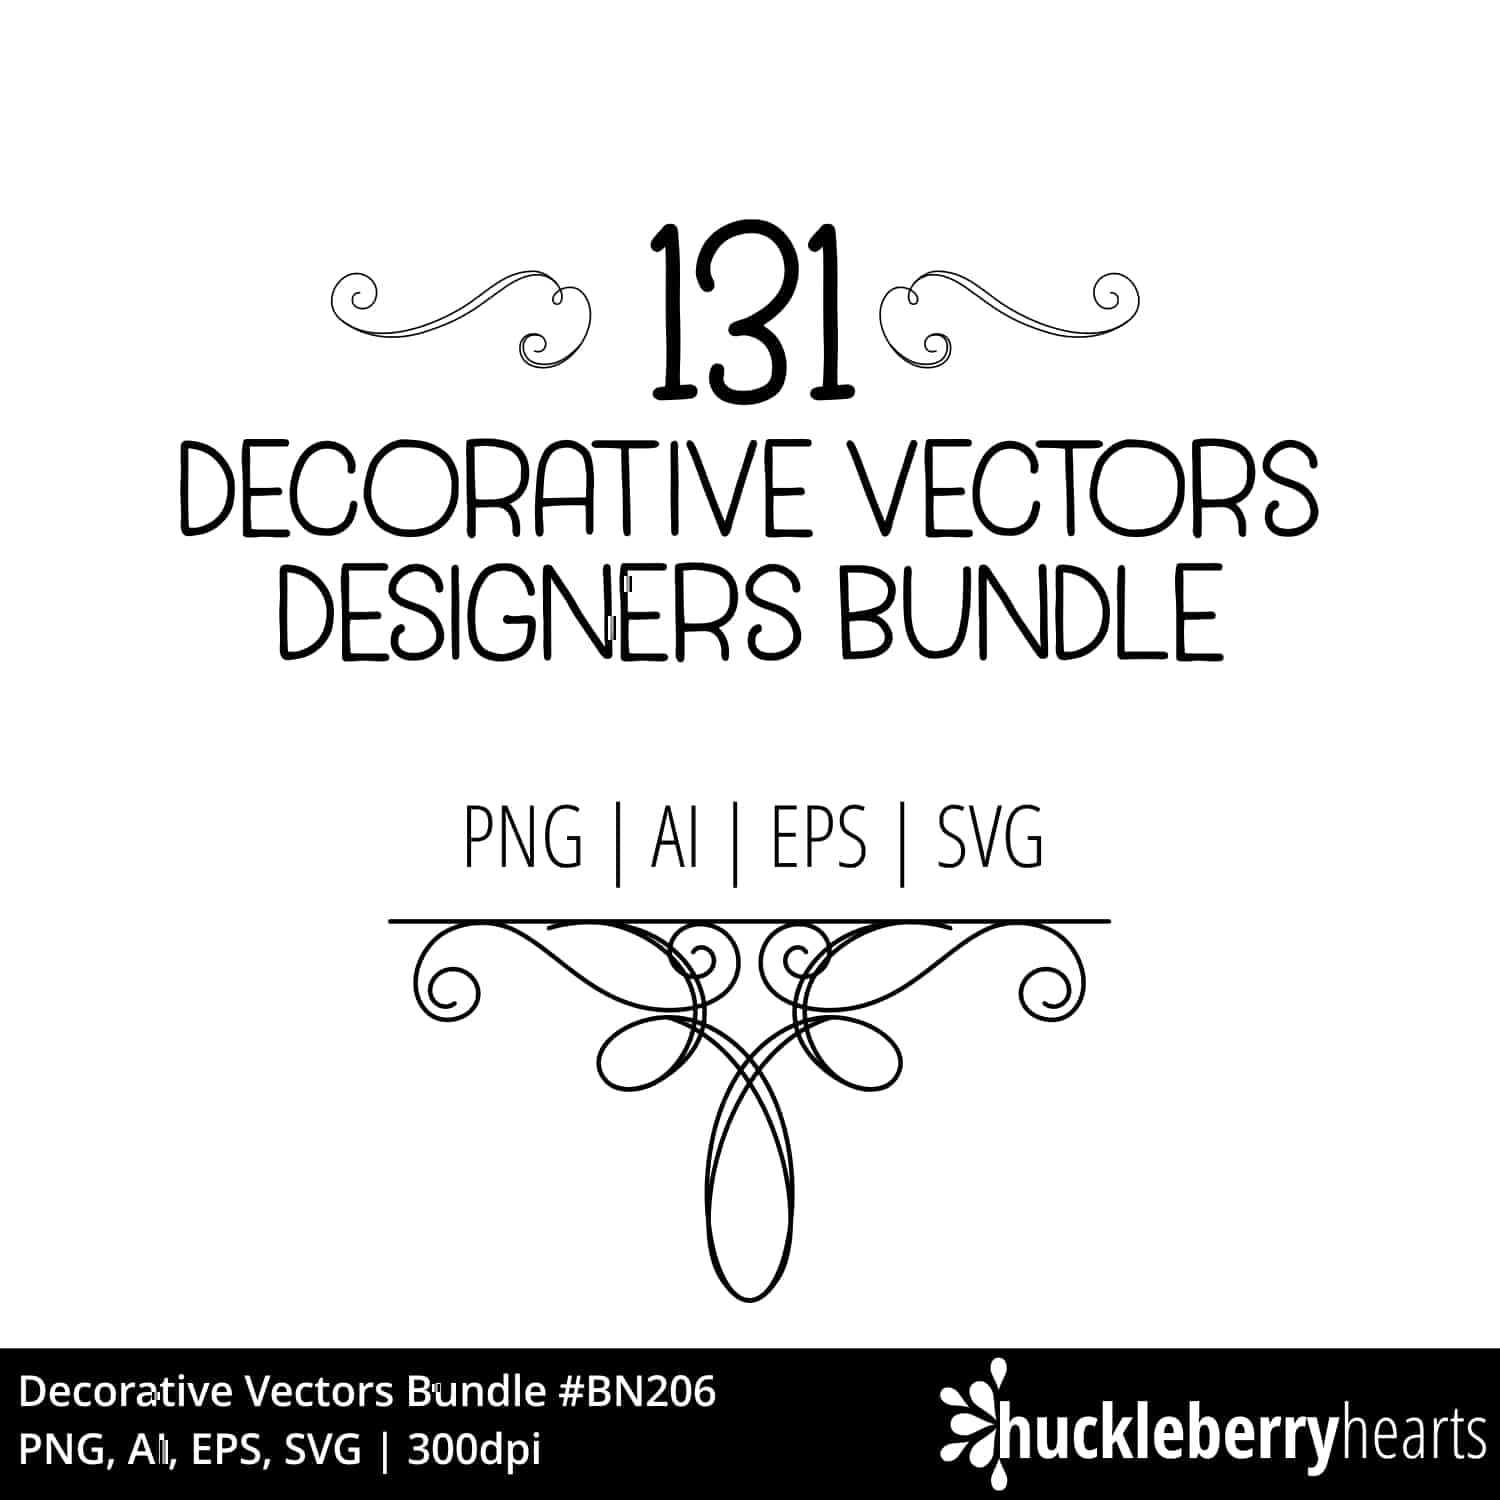 Decorative Vectors Designers Bundle